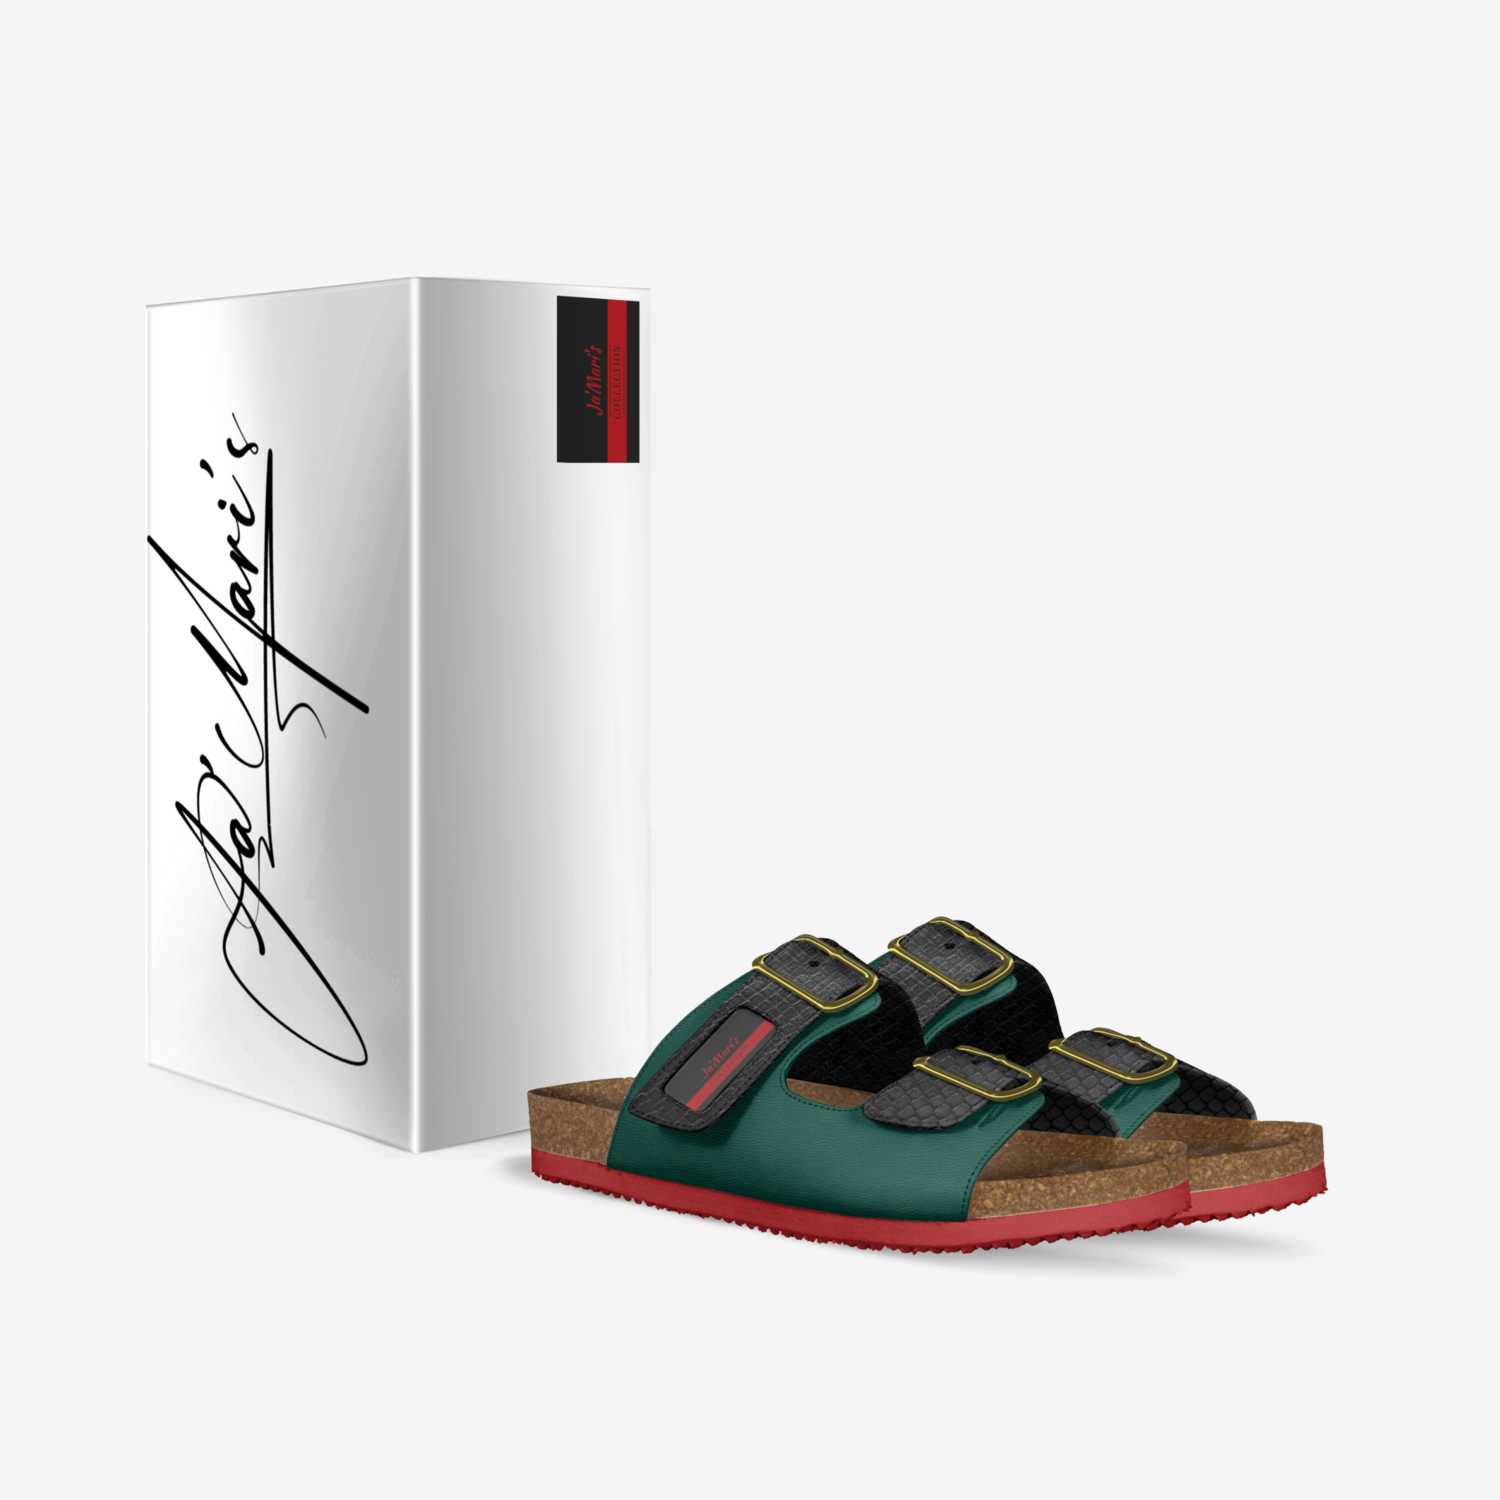 Ja'Mari's custom made in Italy shoes by Raylon Espree | Box view